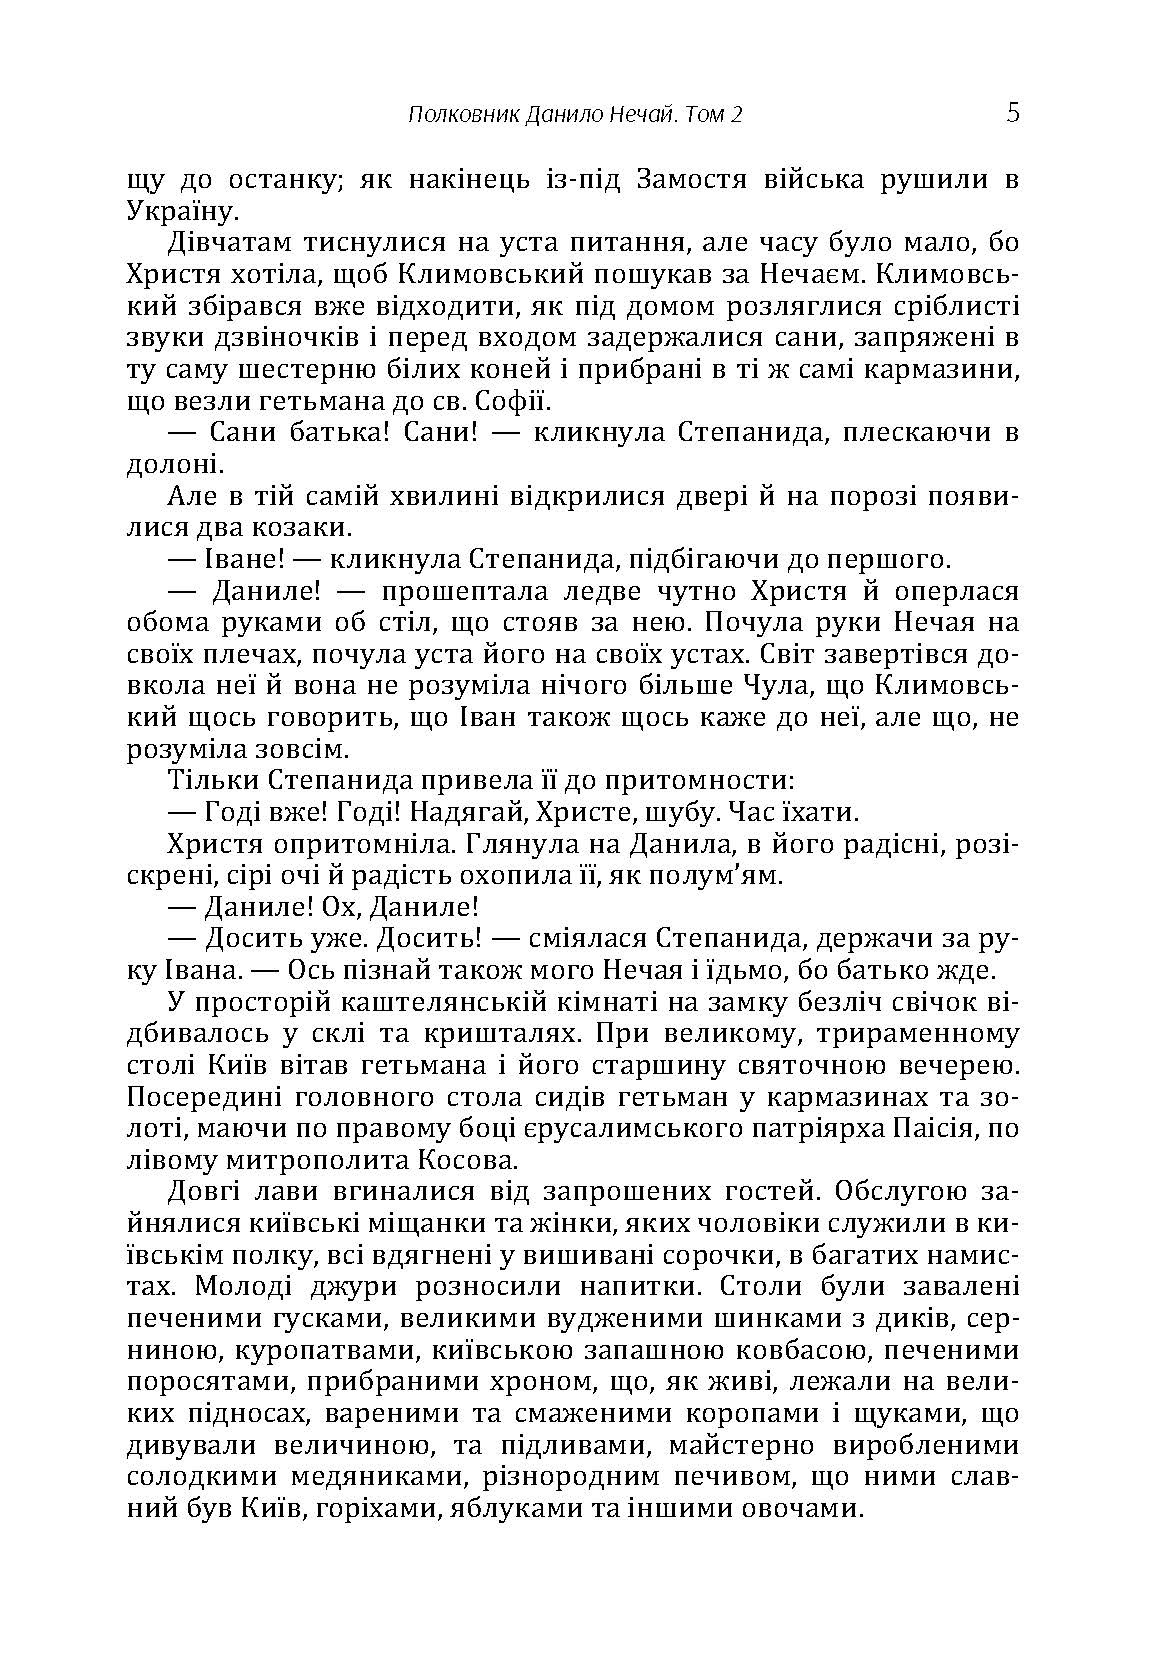 Полковник Данило Нечай. 2 том. Автор — Радзикевич Юліан. 